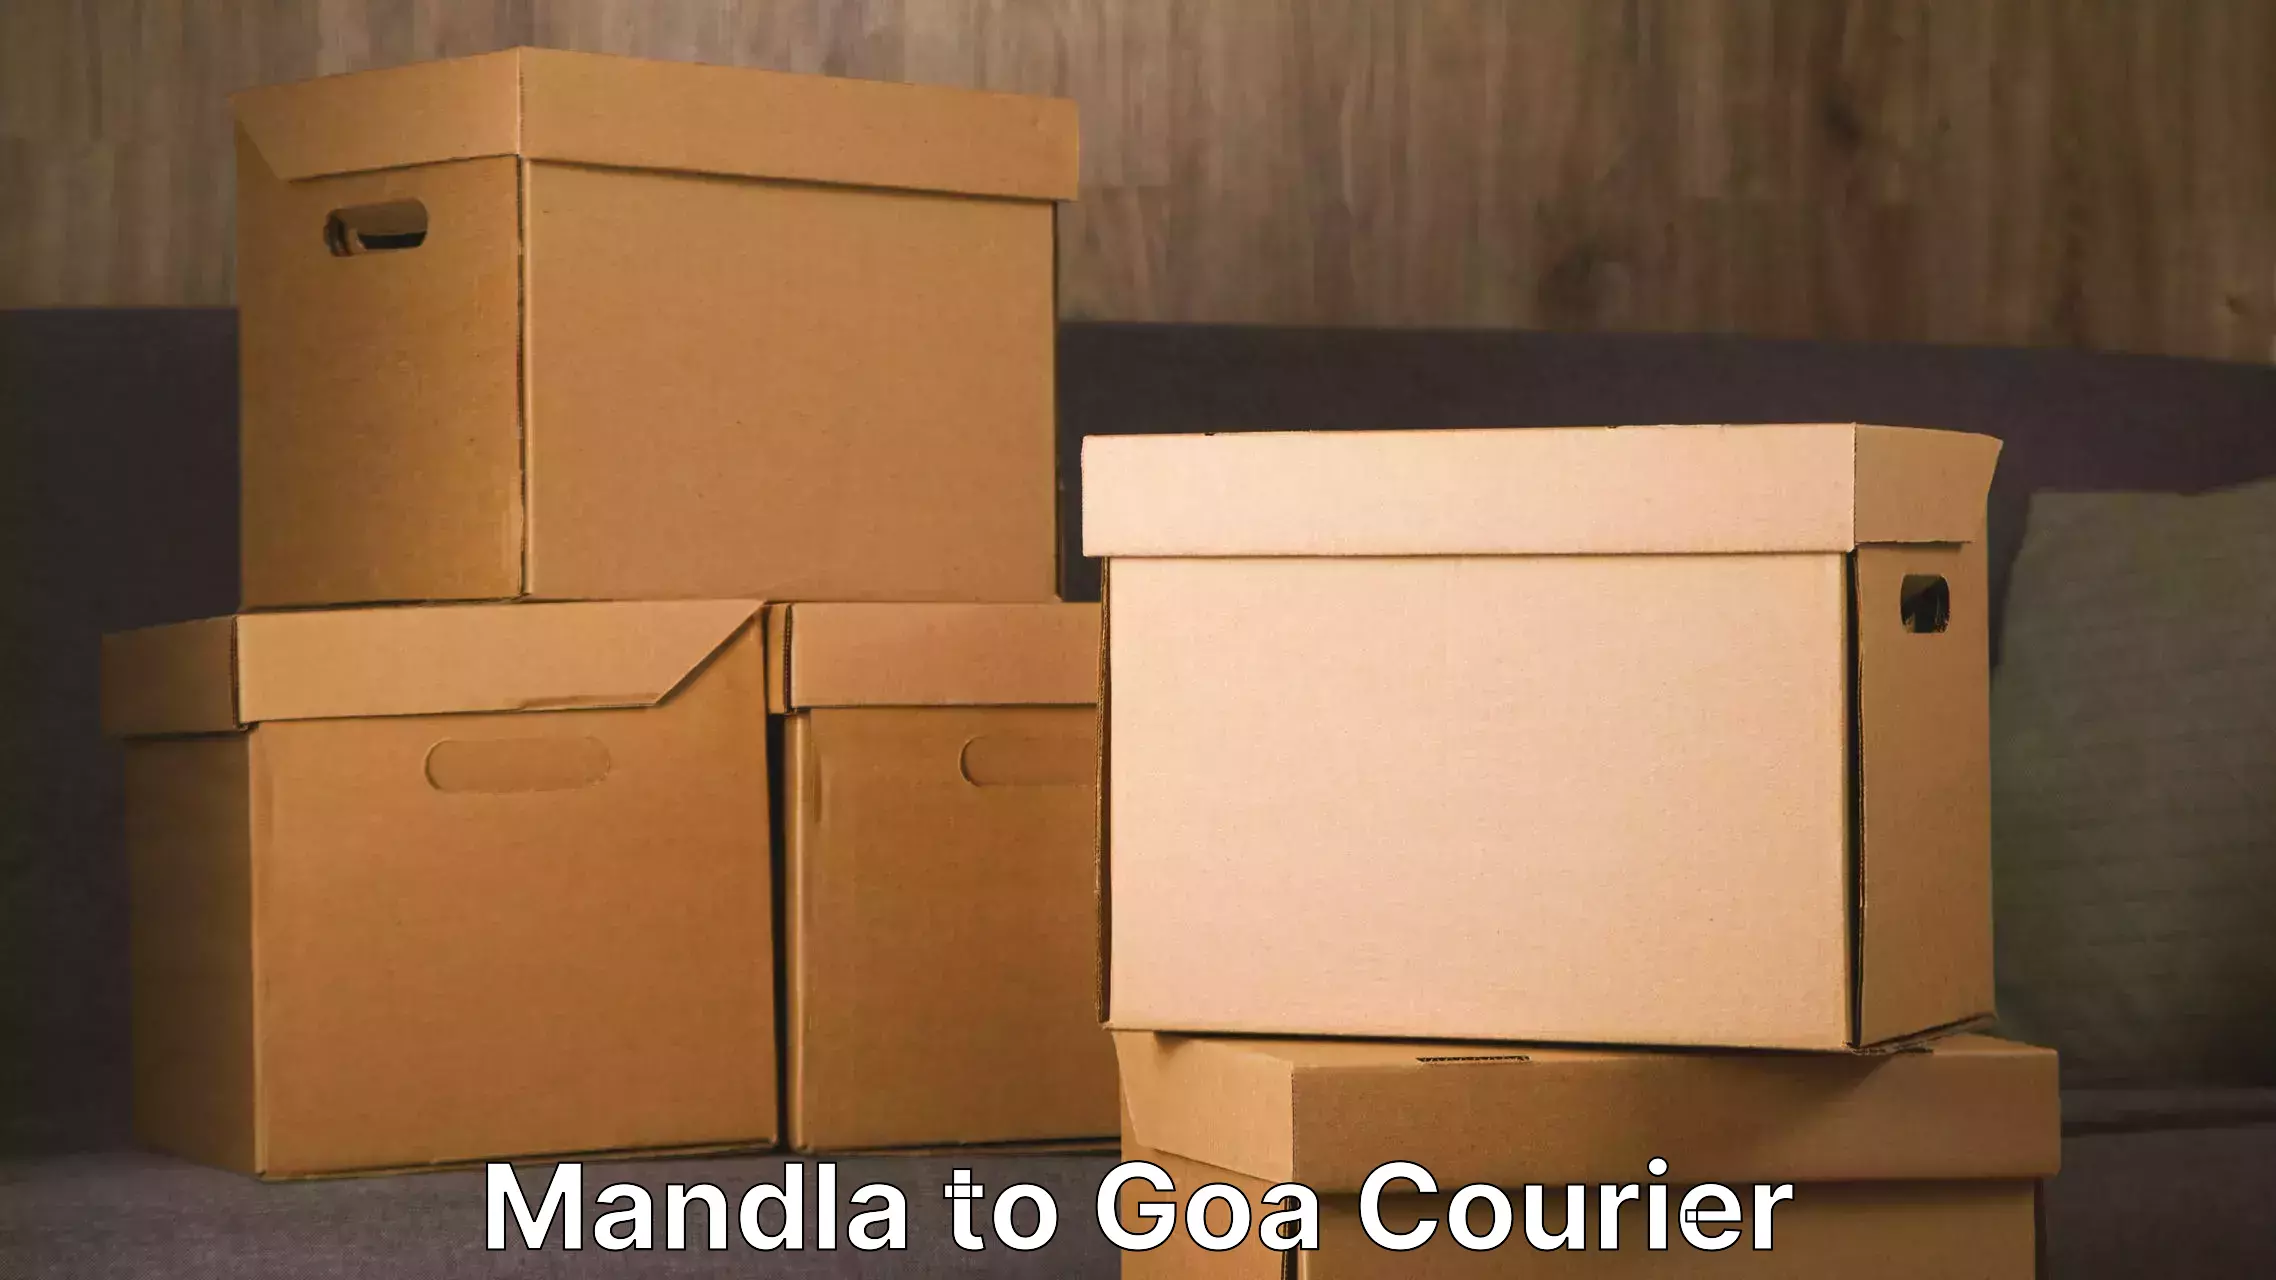 Furniture delivery service Mandla to Vasco da Gama